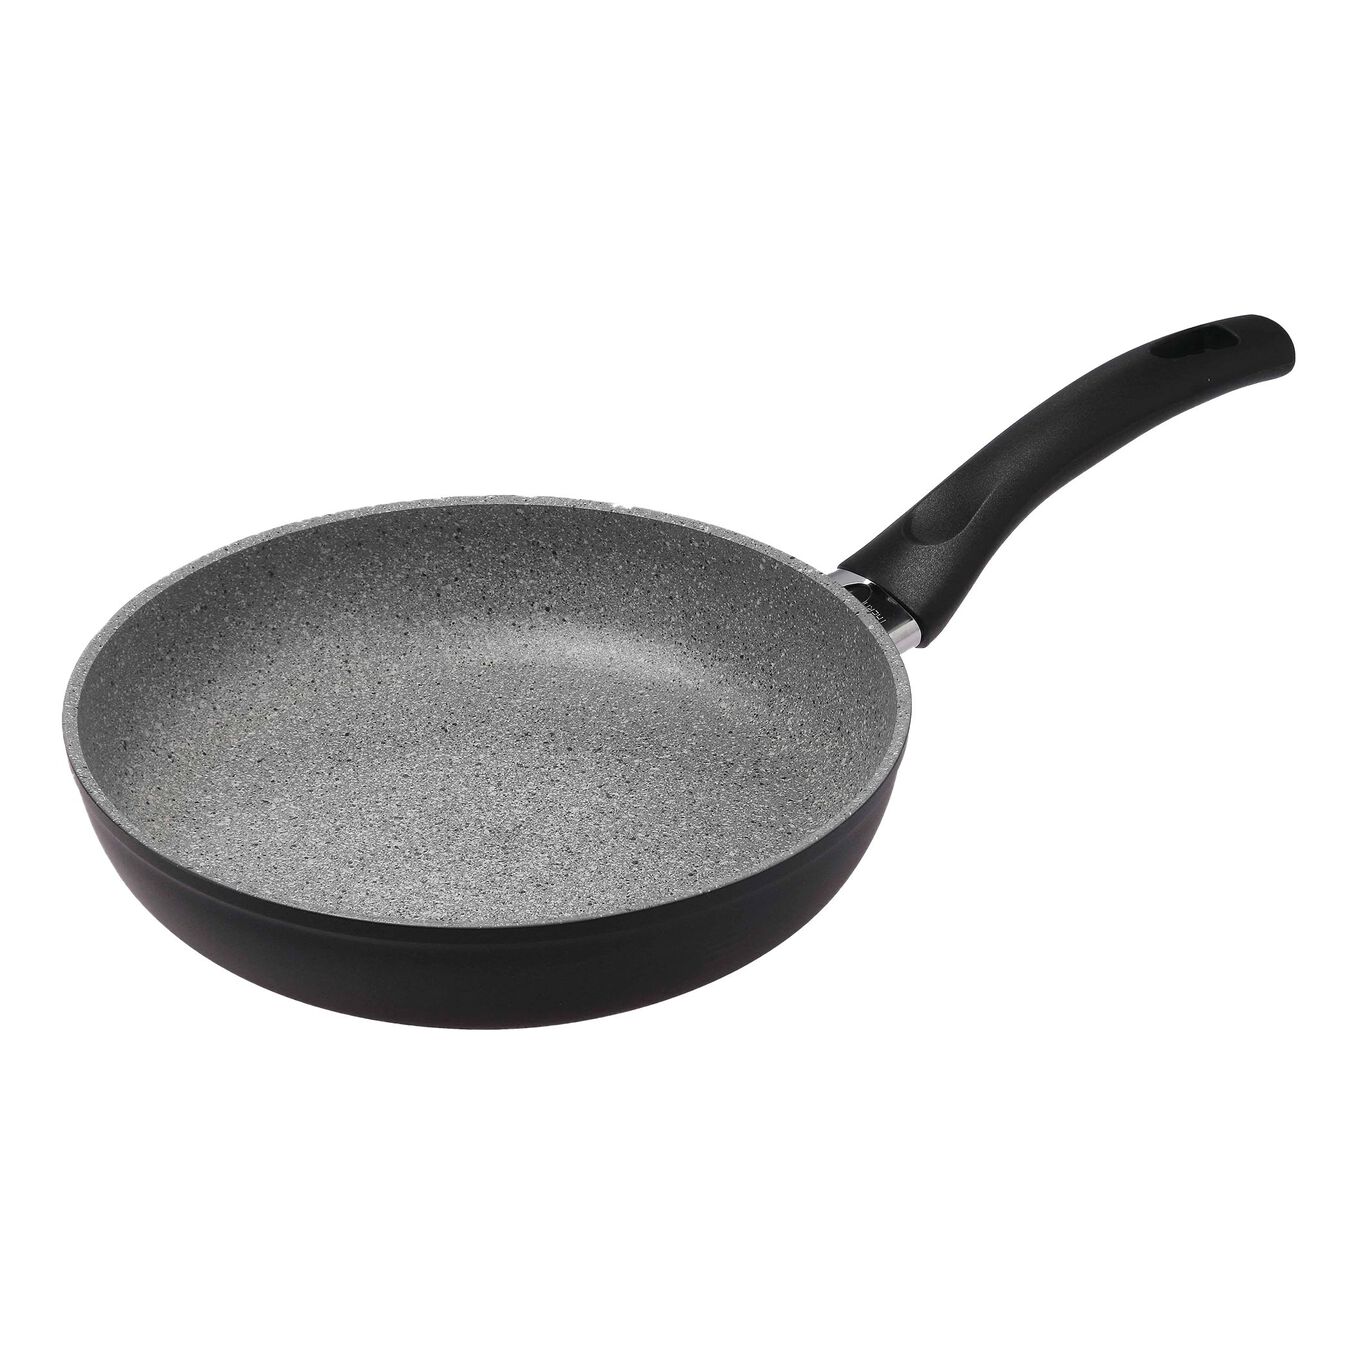  Granitium round 32cm/12.5in frypan pan, grey,,large 1